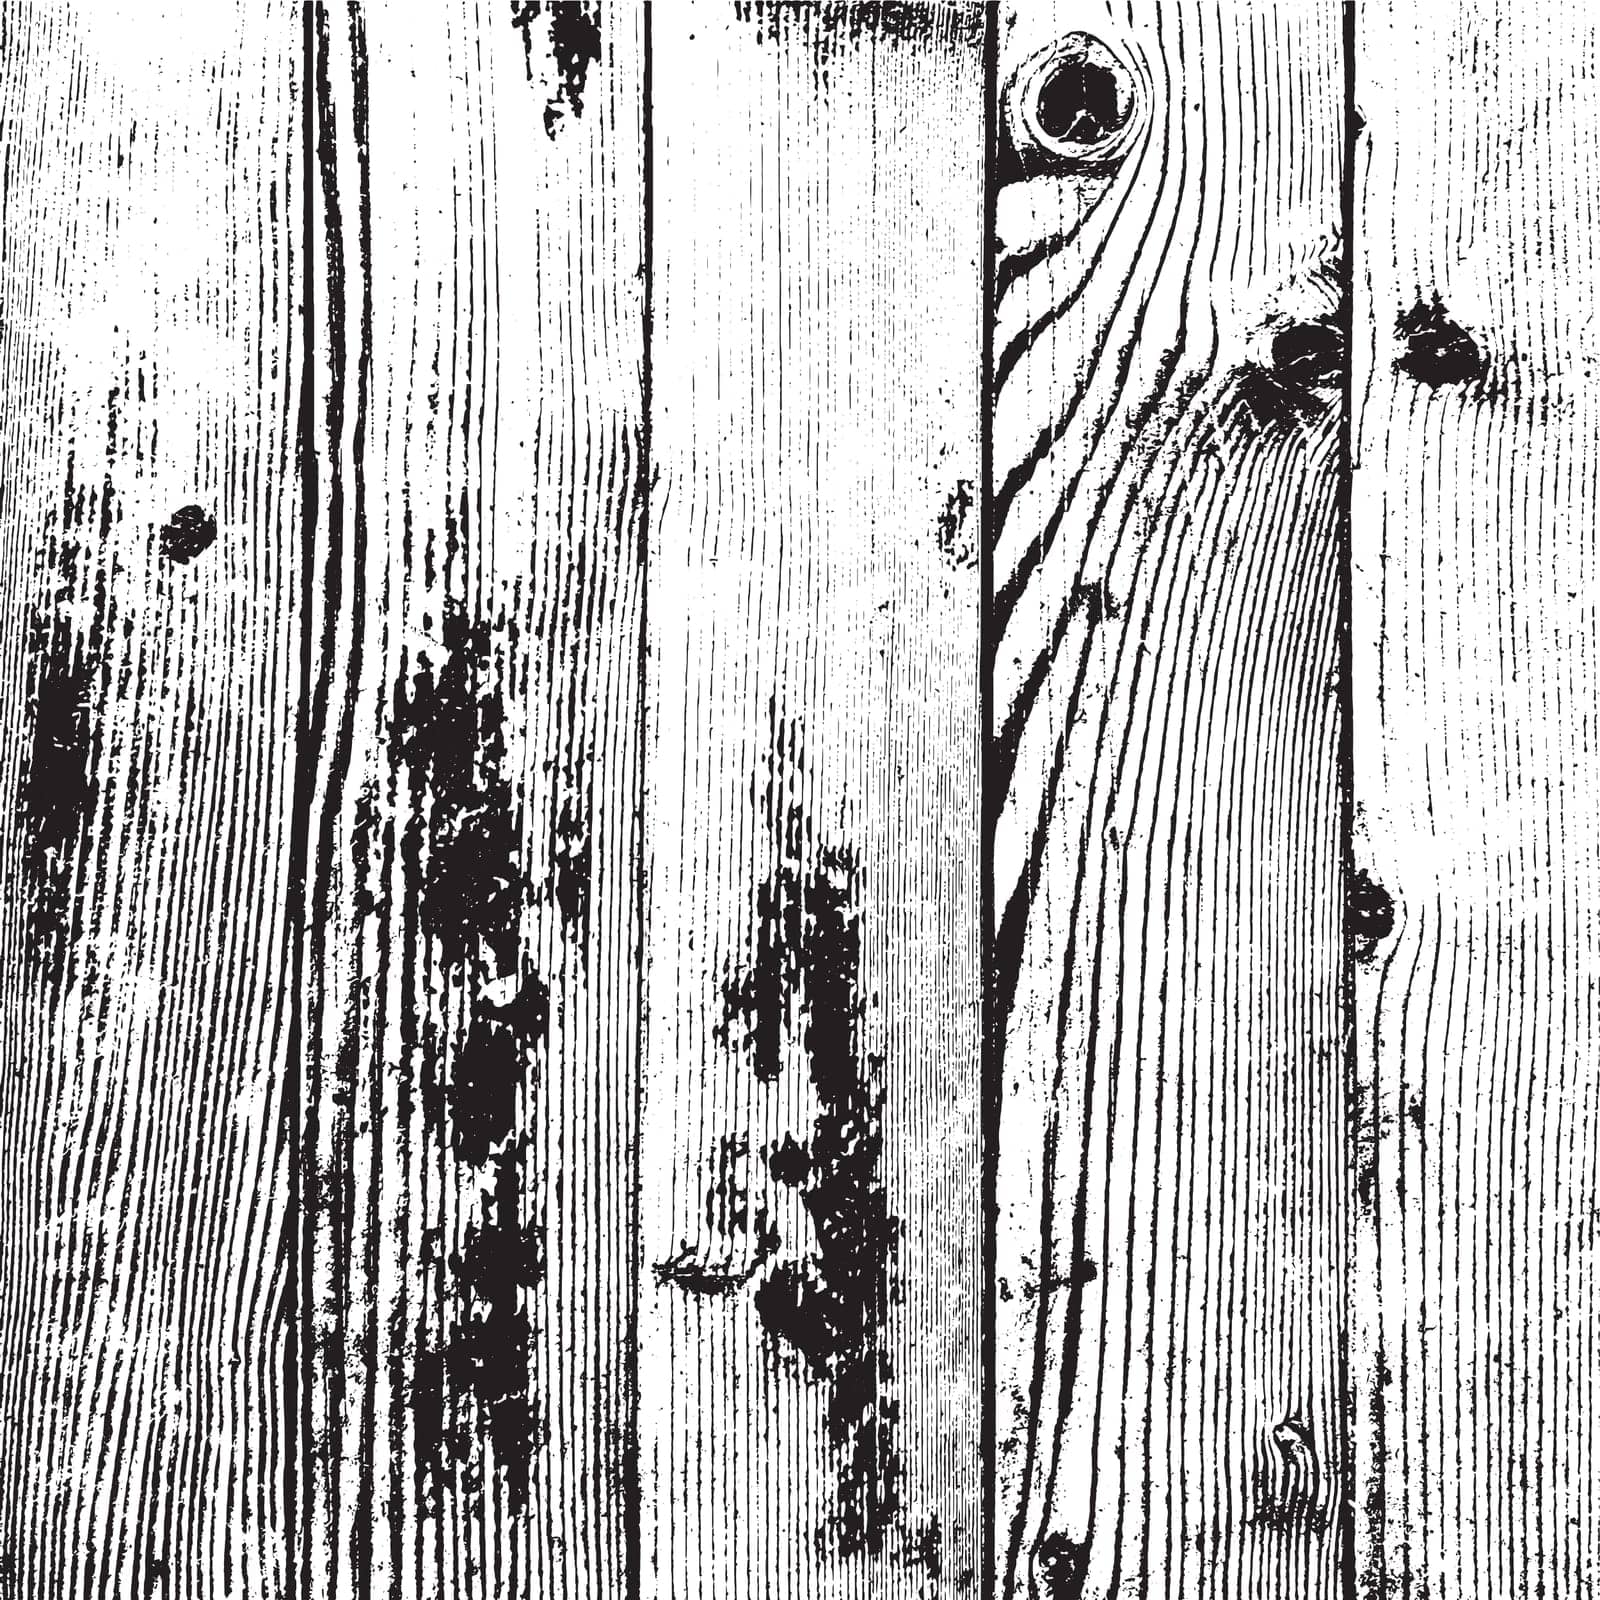 Wooden Overlay Texture by benjaminlion